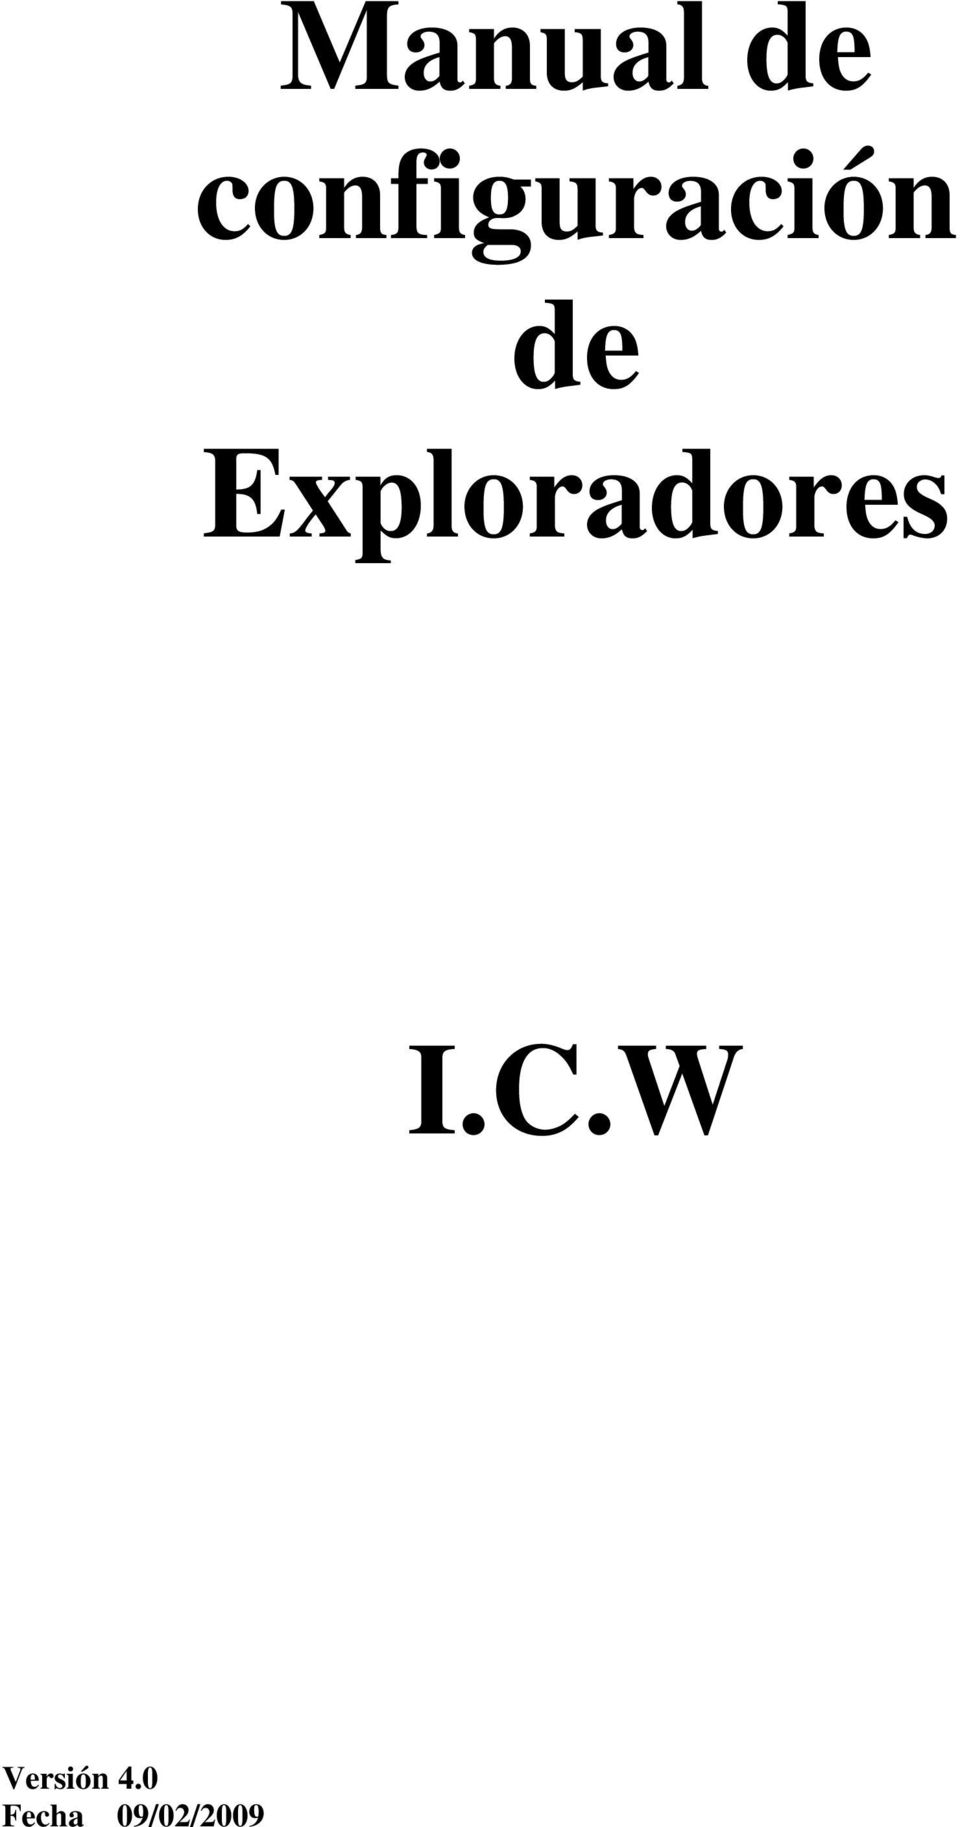 Exploradores I.C.